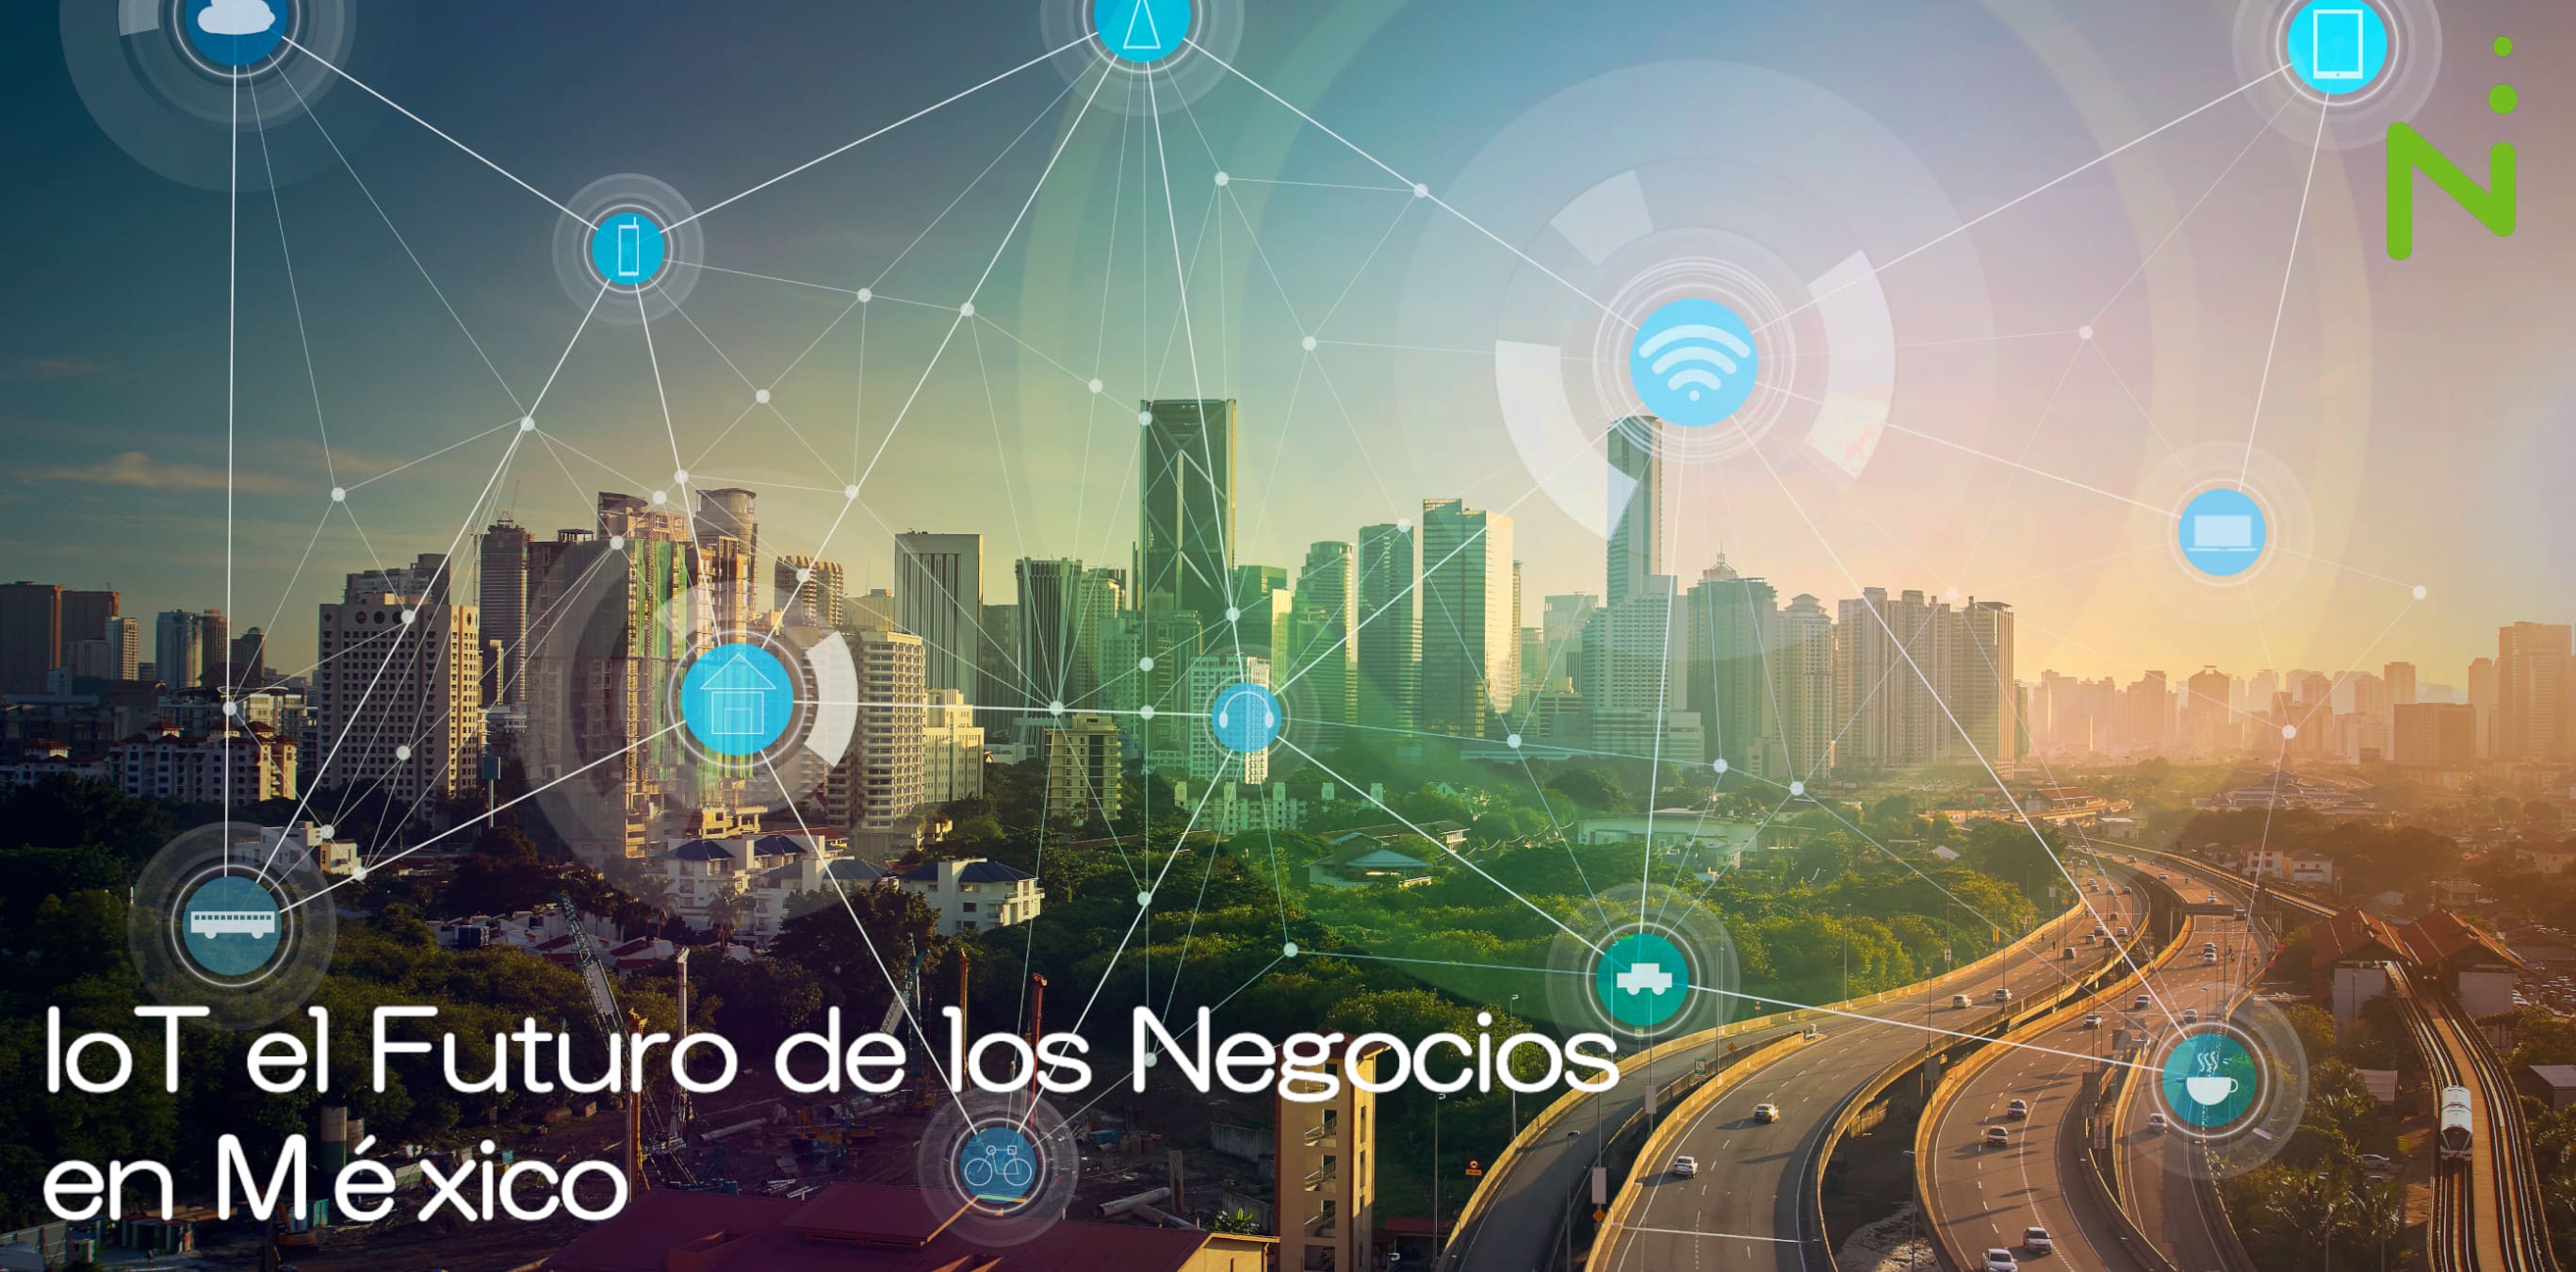 IoT el futuro de las Empresas en México